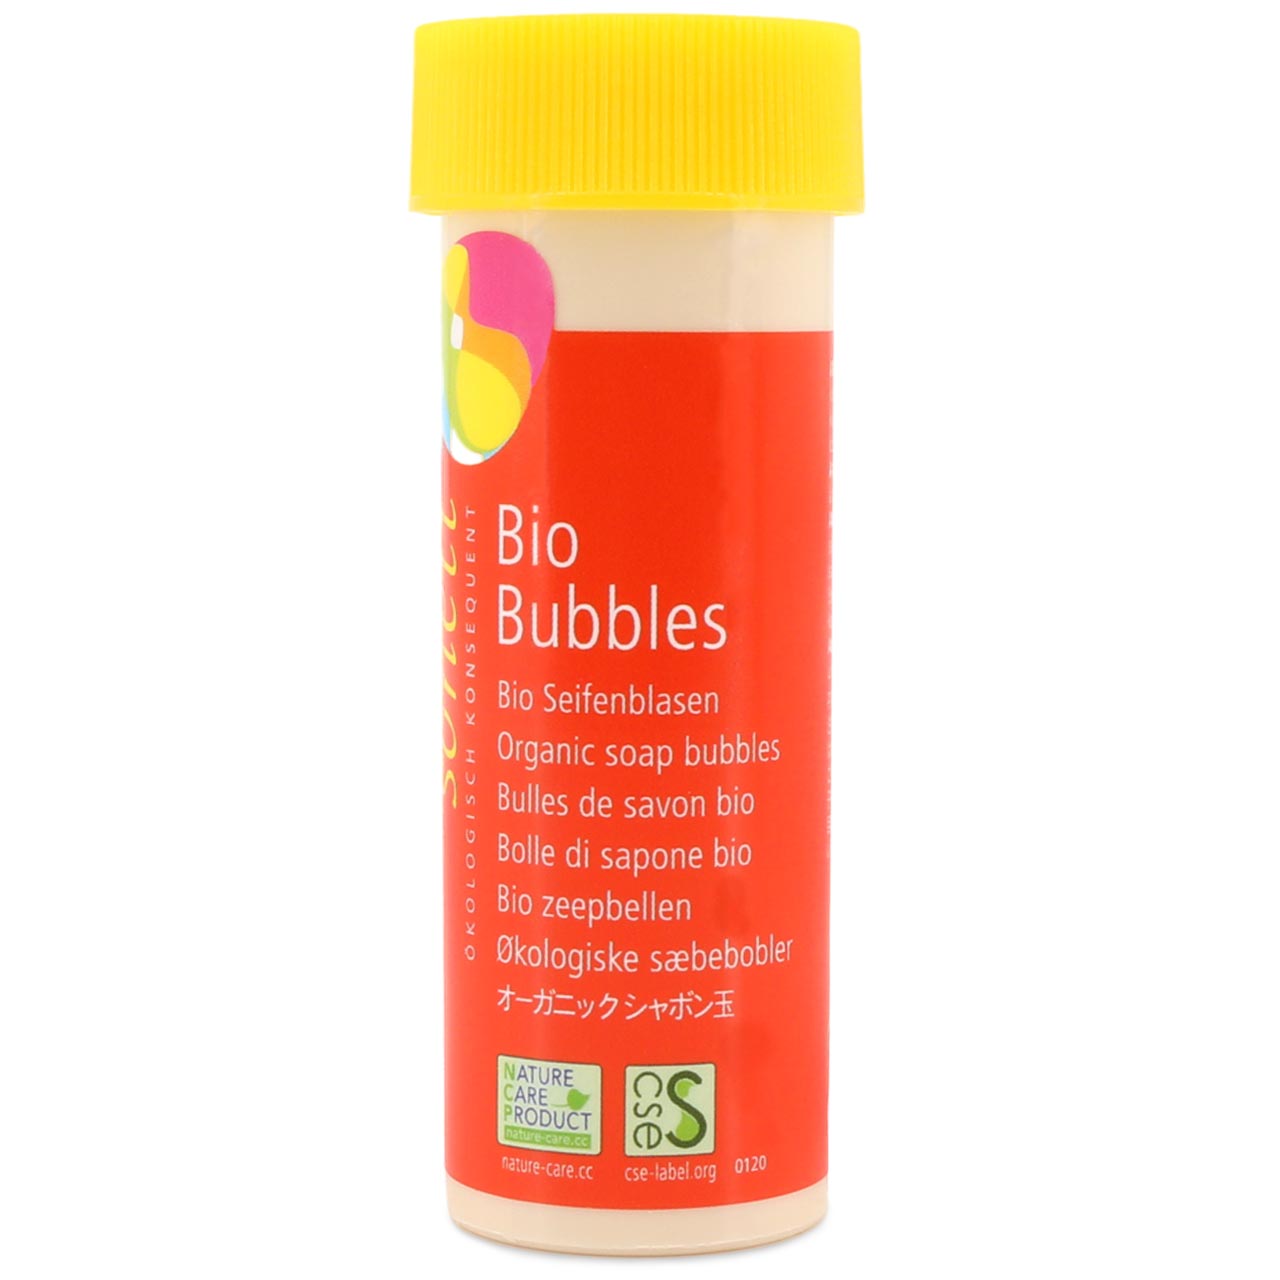 BioBubbles Seifenblasen in Bio-Qualität - 45 ml